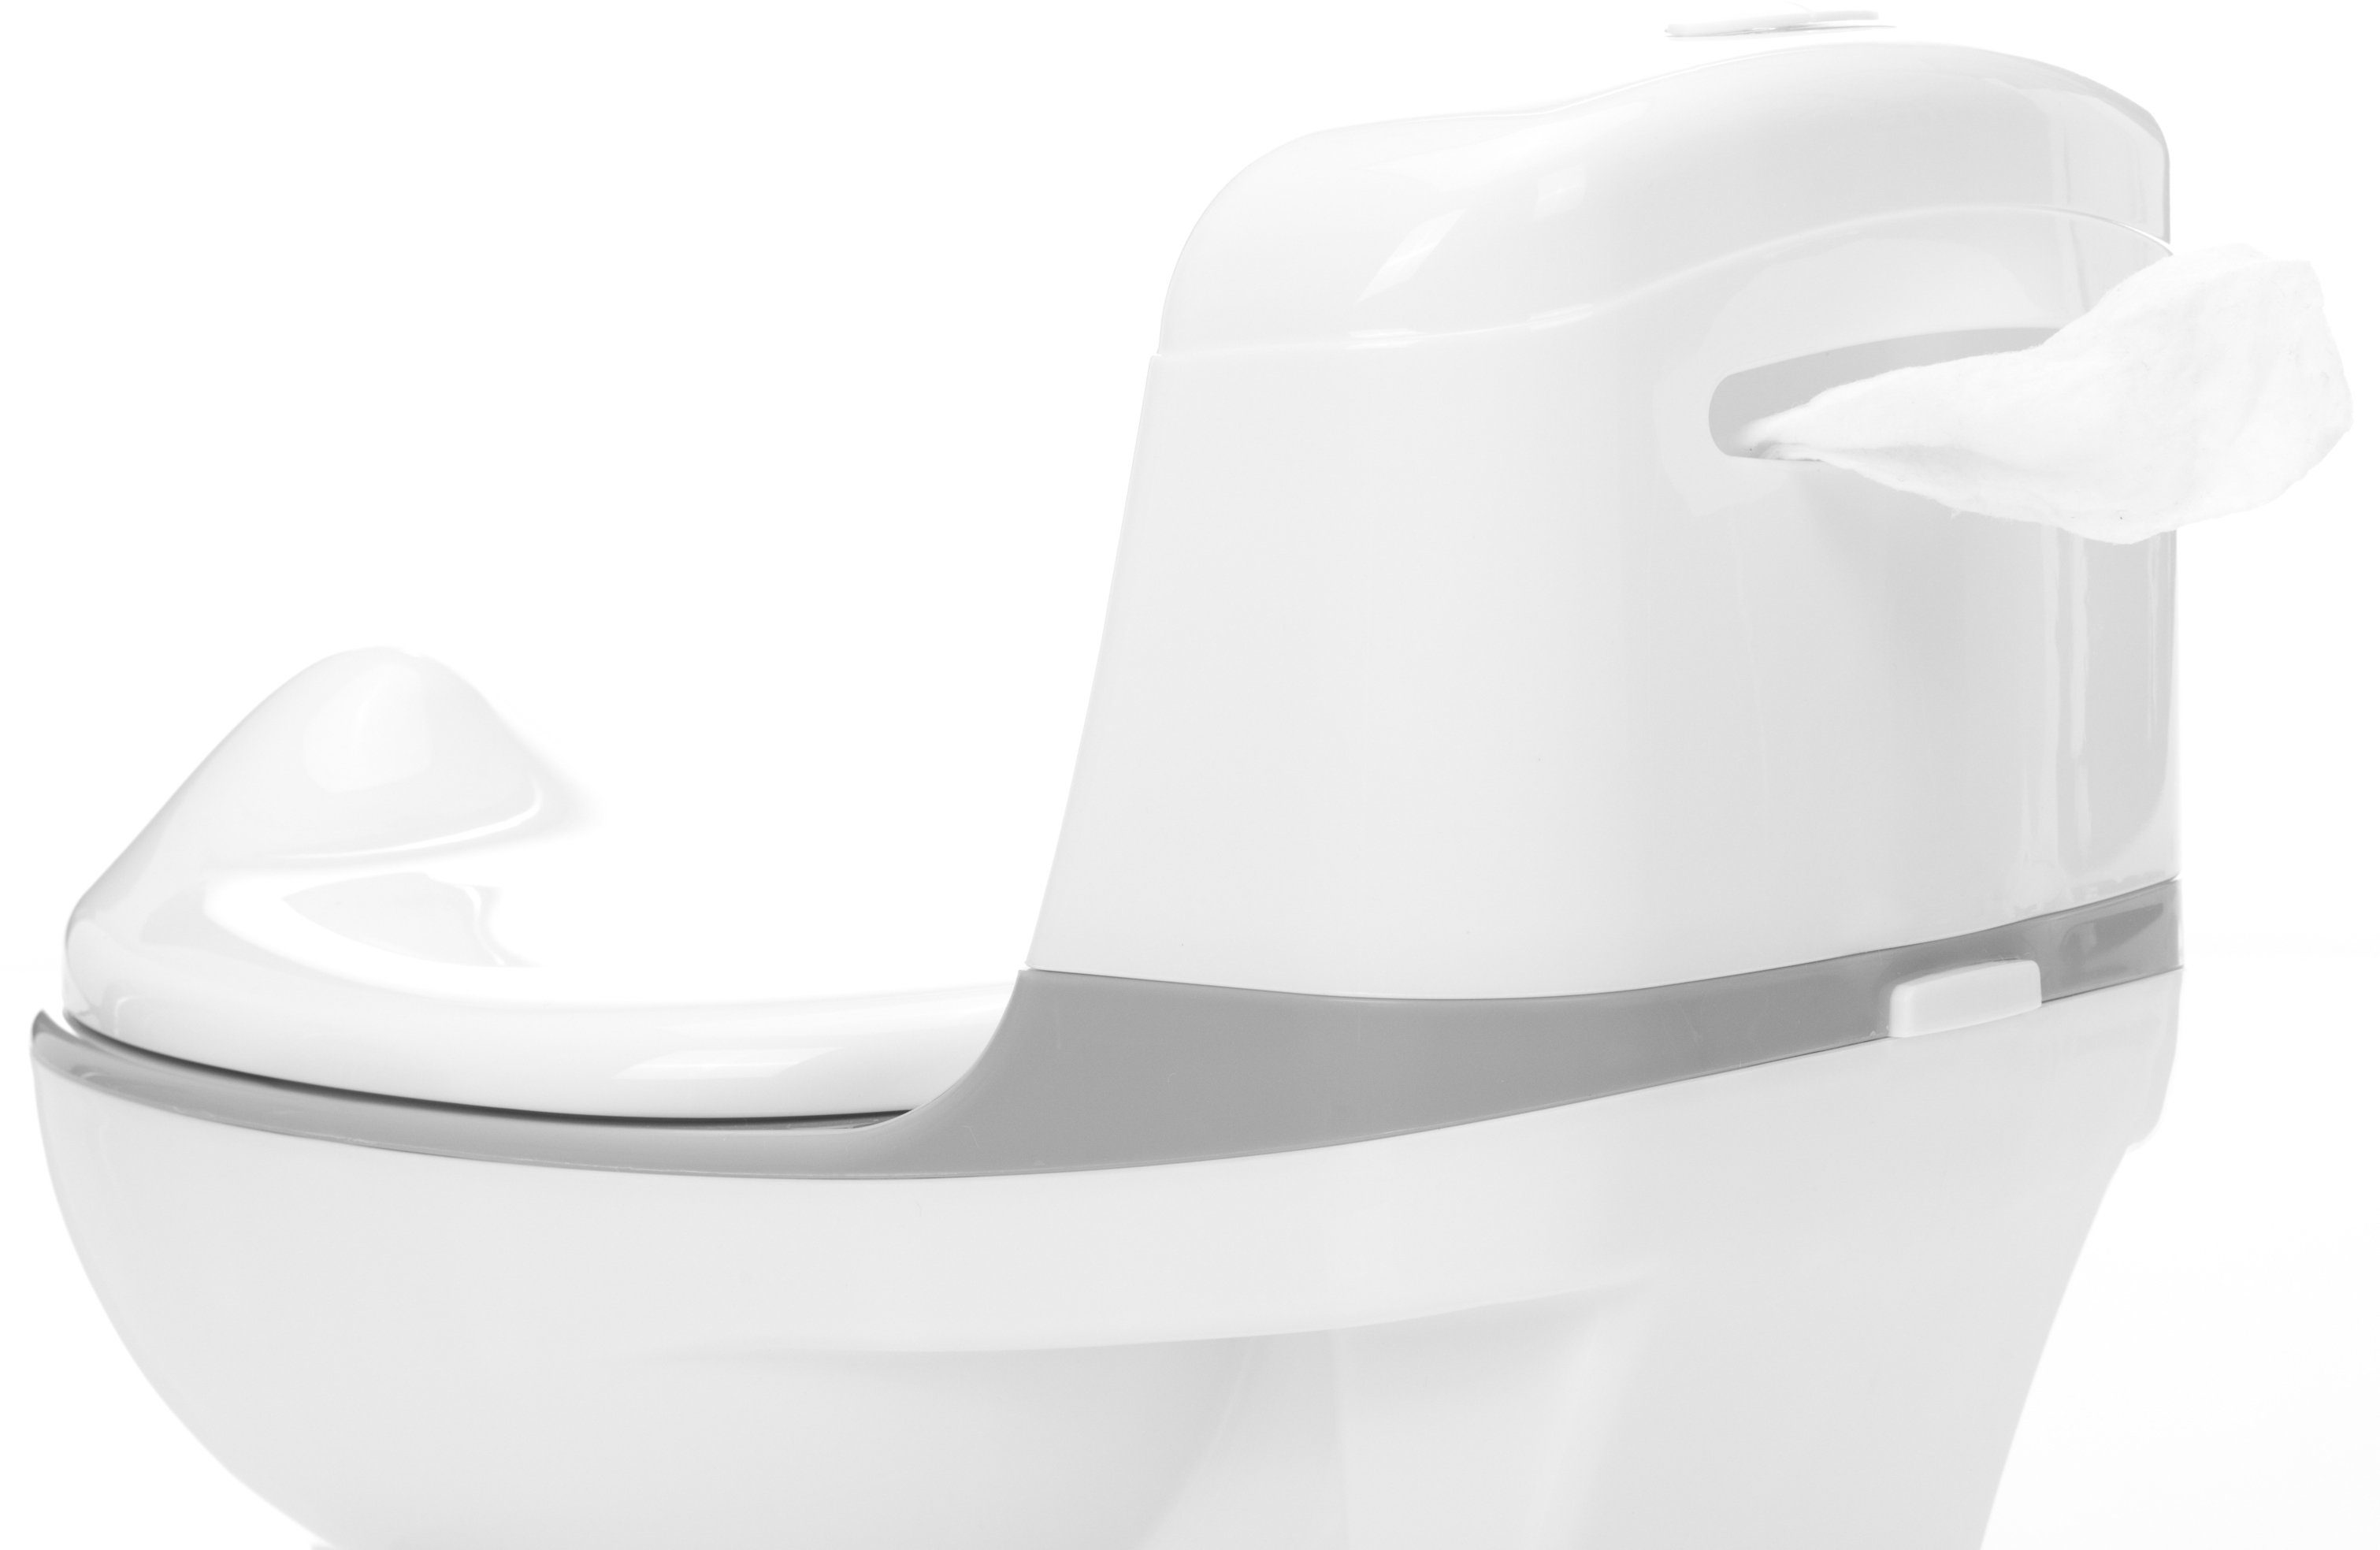 Lichteffekte Mini Toilette, inkl. Fillikid und Sound- weiß/grau, Töpfchen